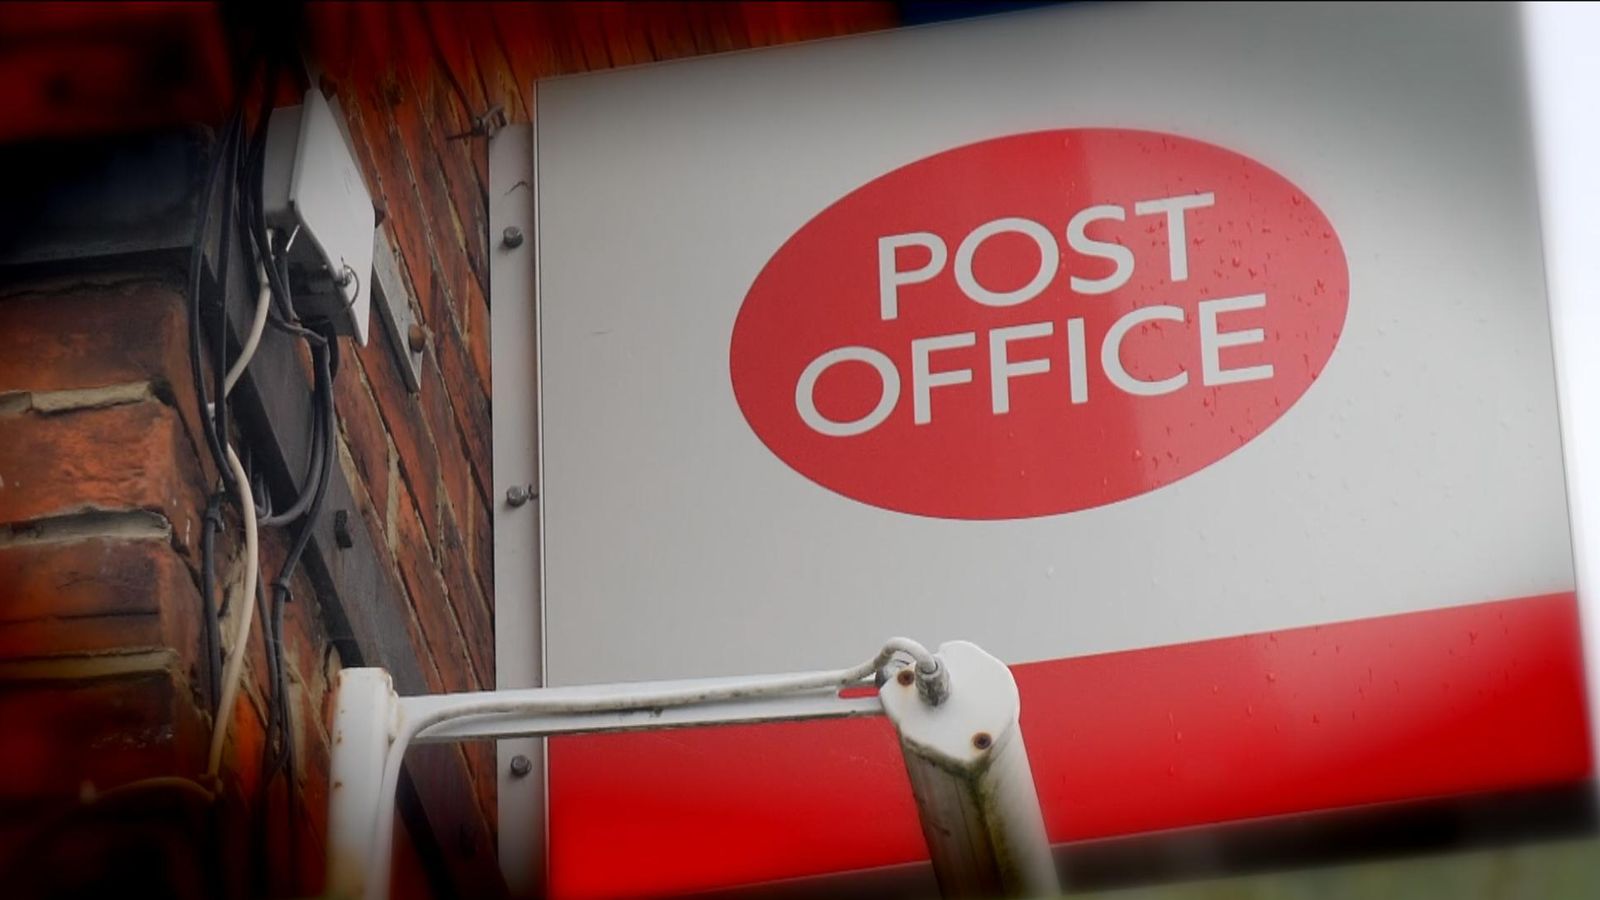 Banken bereiten sich auf Konfrontation mit der Post wegen Bargeldzugangsgebühren vor |  Wirtschaftsnachrichten